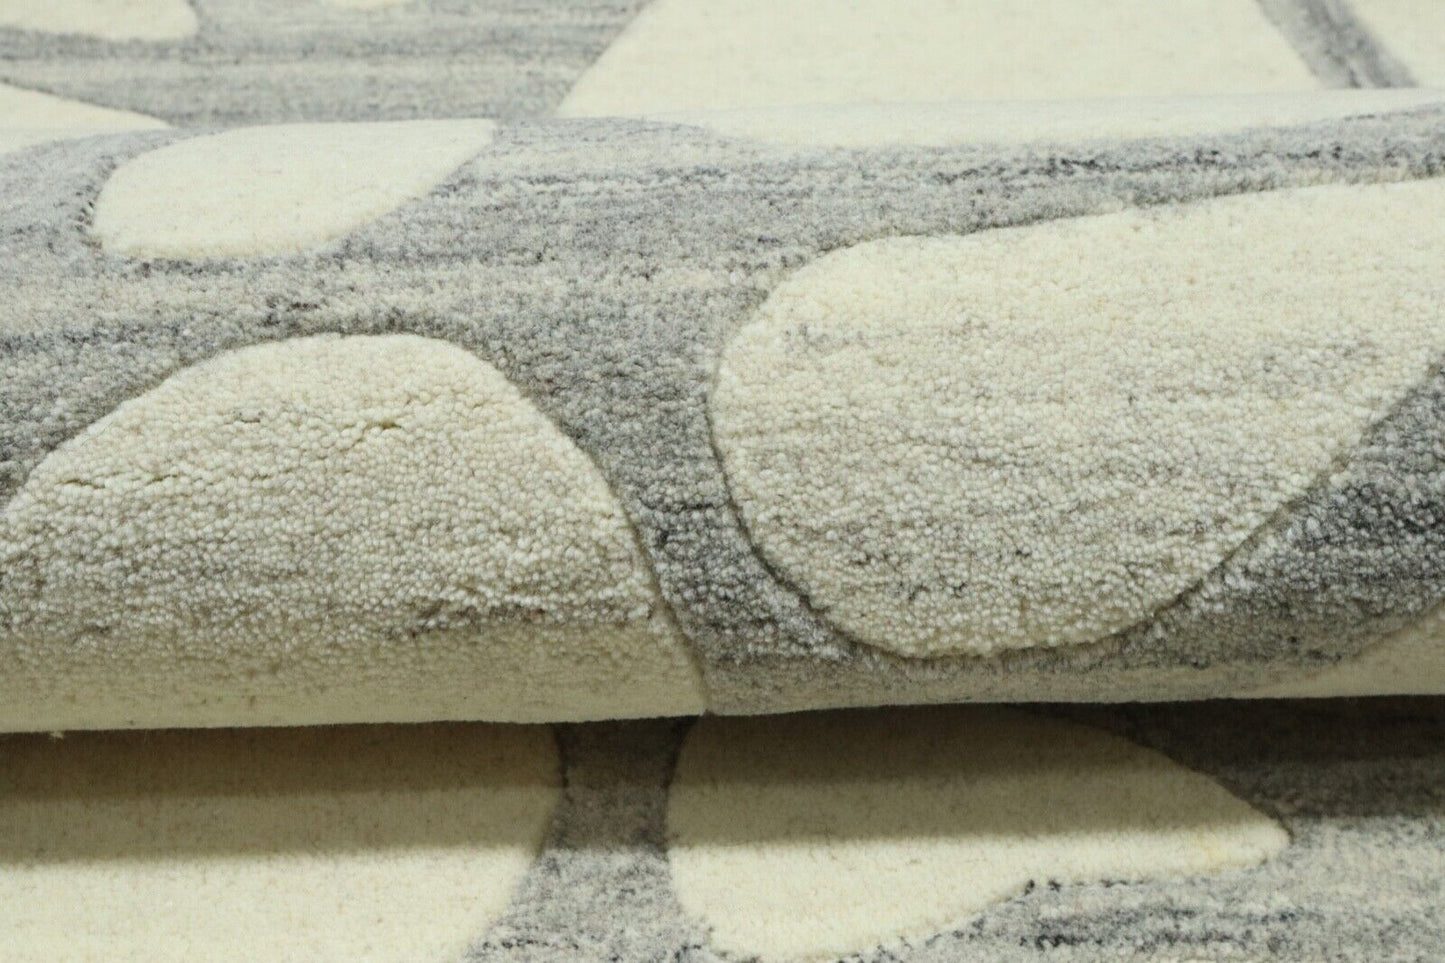 Rund Beige Grau Teppich 100% Wolle 150X150 cm Handarbeit Handgetuftet T947